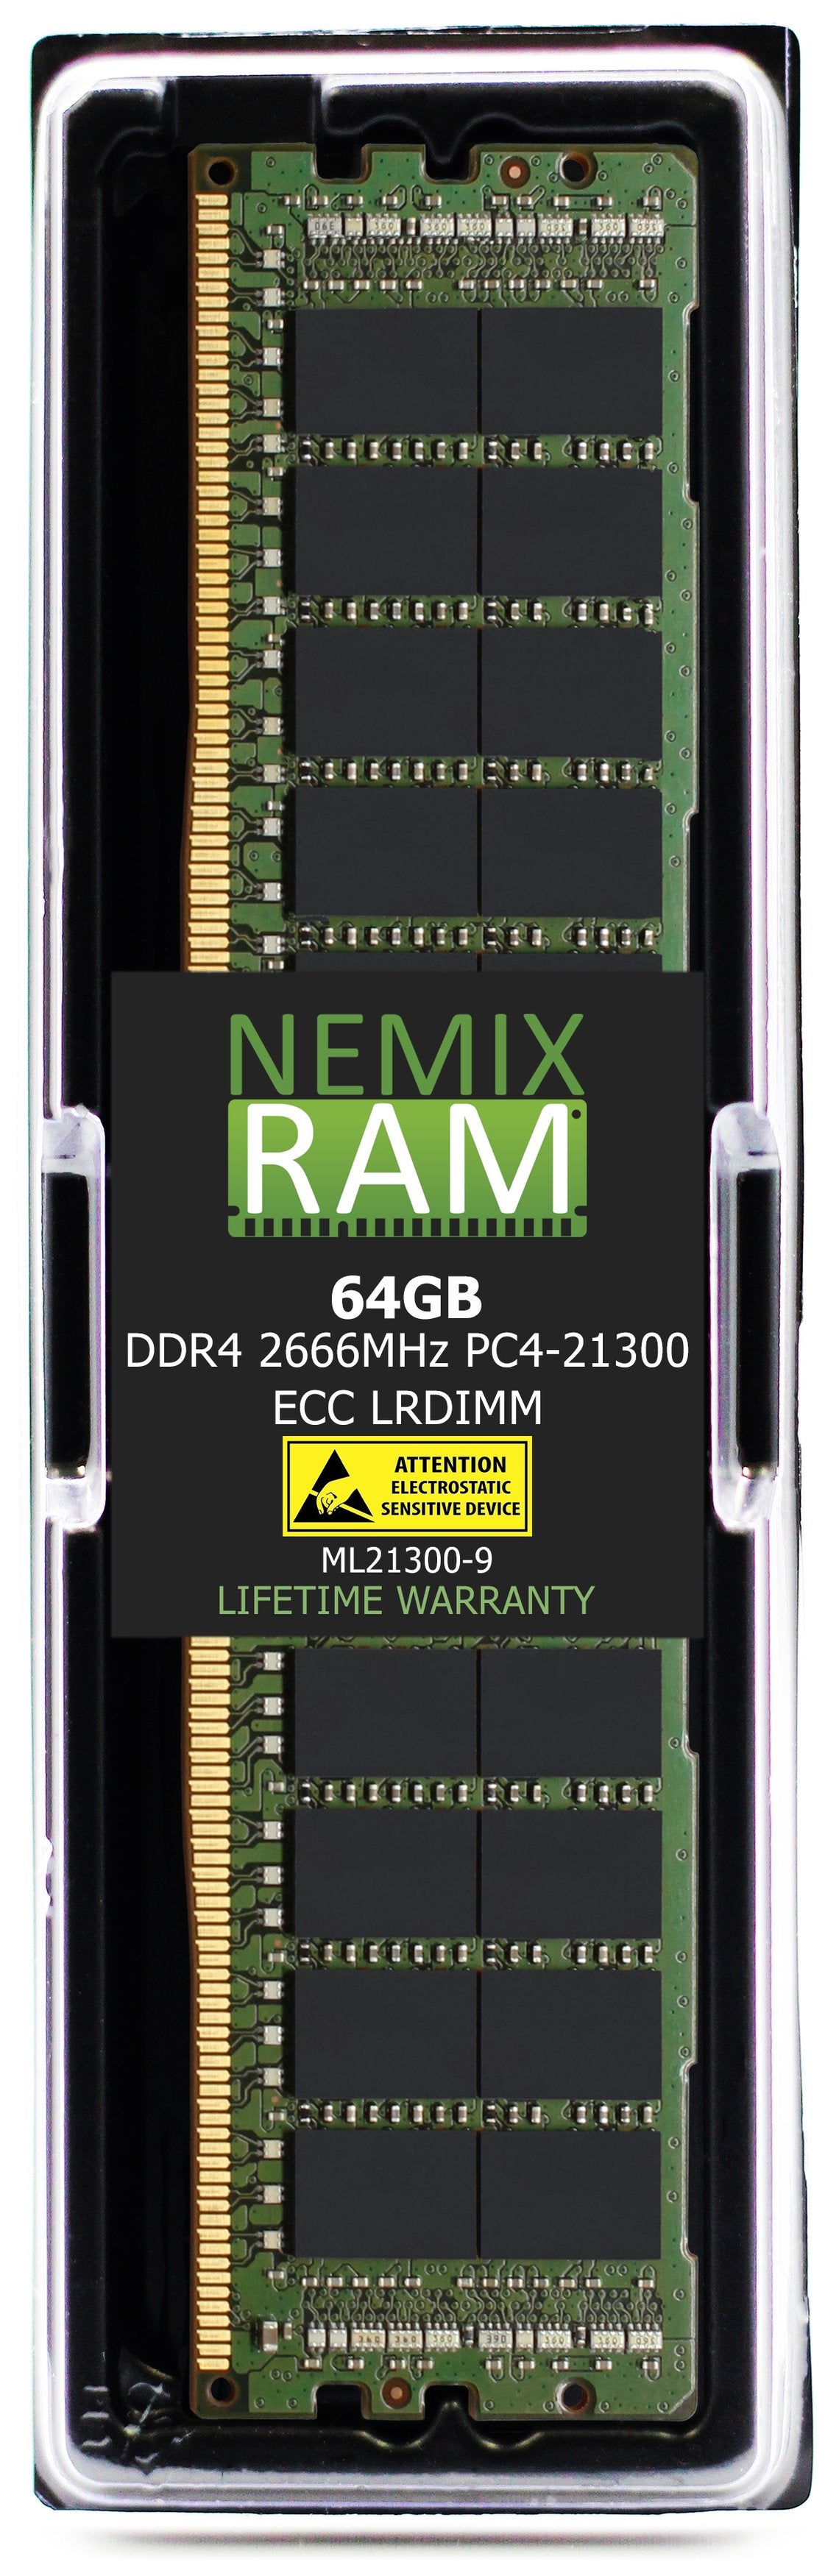 64GB DDR4 2666MHZ PC4-21300 LRDIMM Compatible with Supermicro MEM-DR464L-HL01-LR26